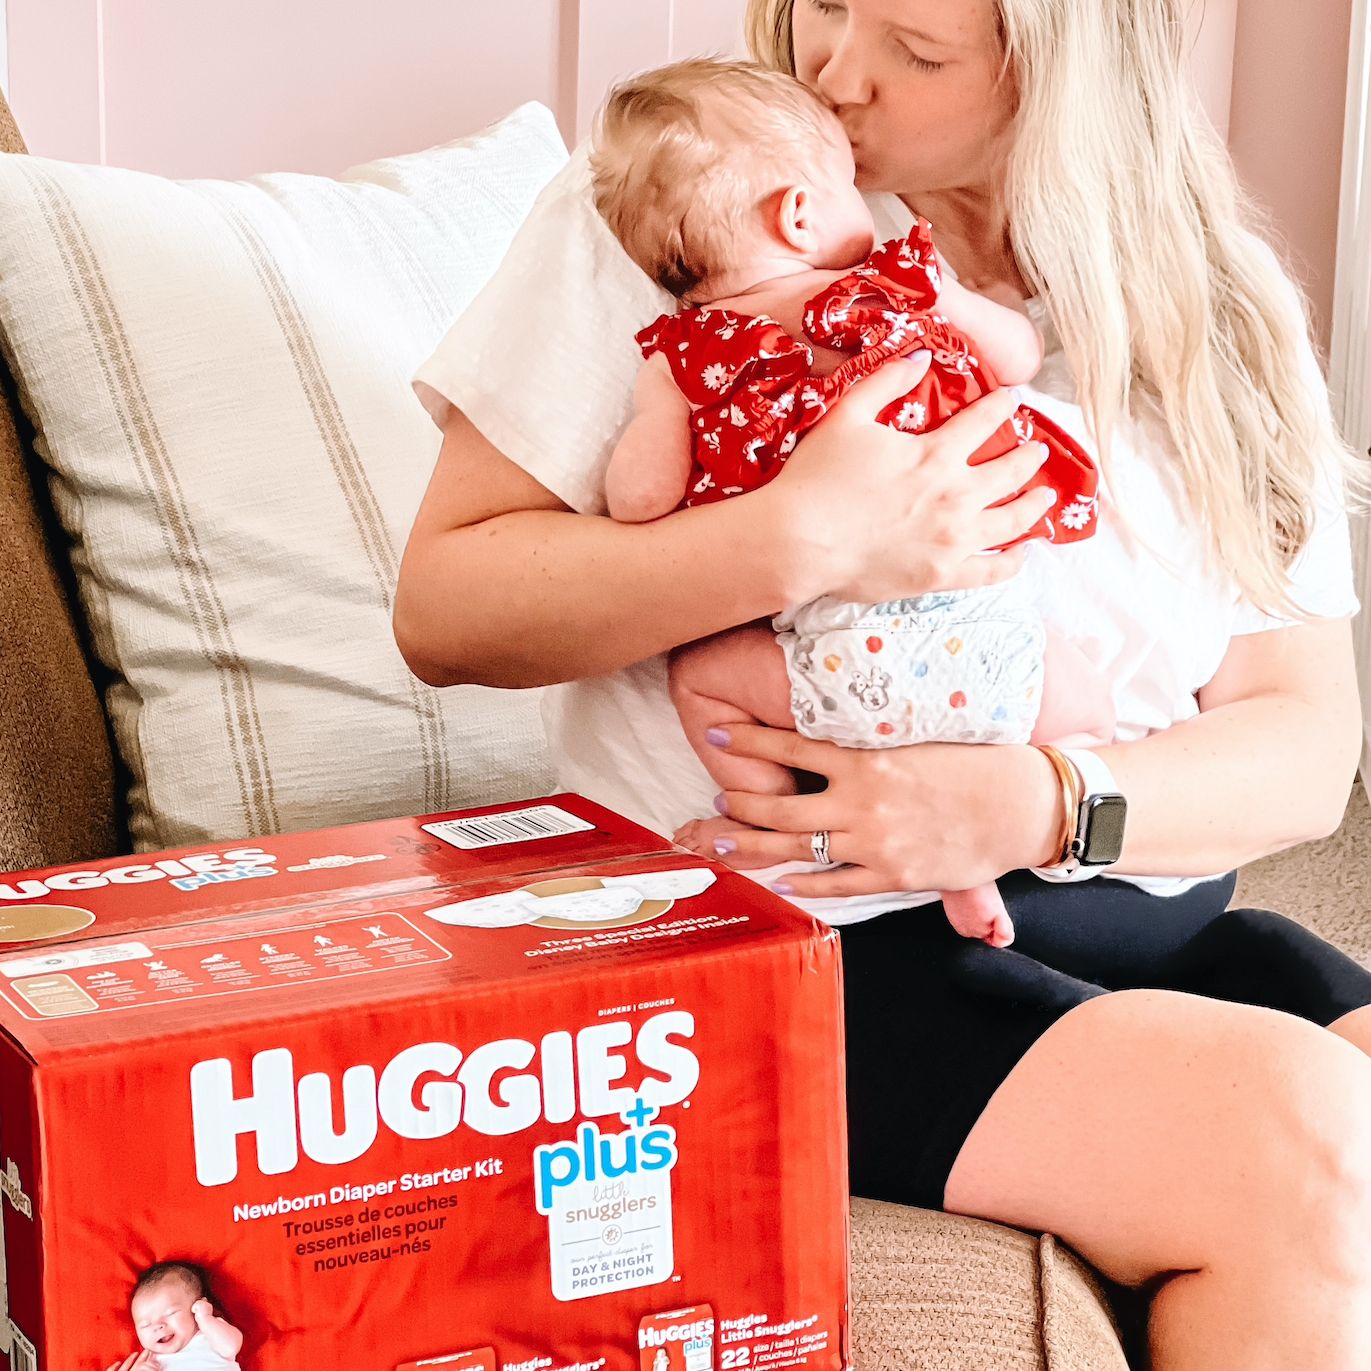 Huggies Newborn Diaper Campaign